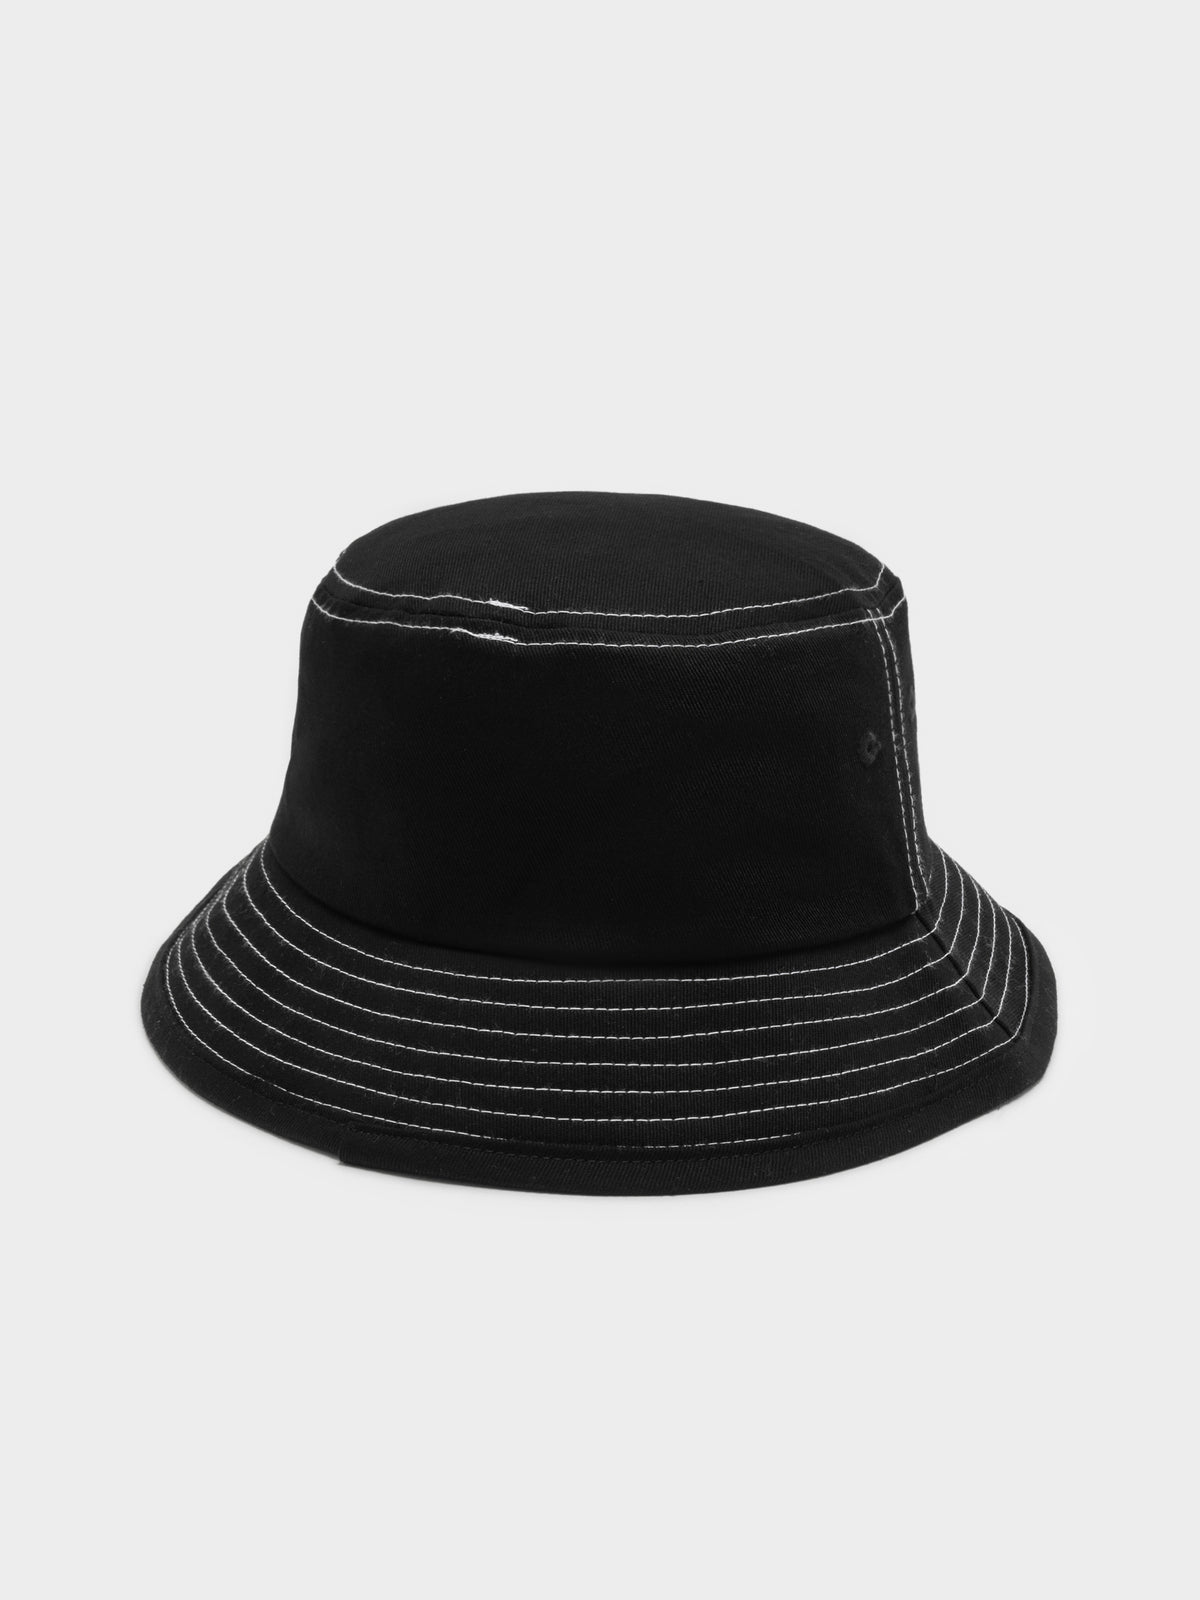 Infinite Thrills Bucket Hat in Washed Black